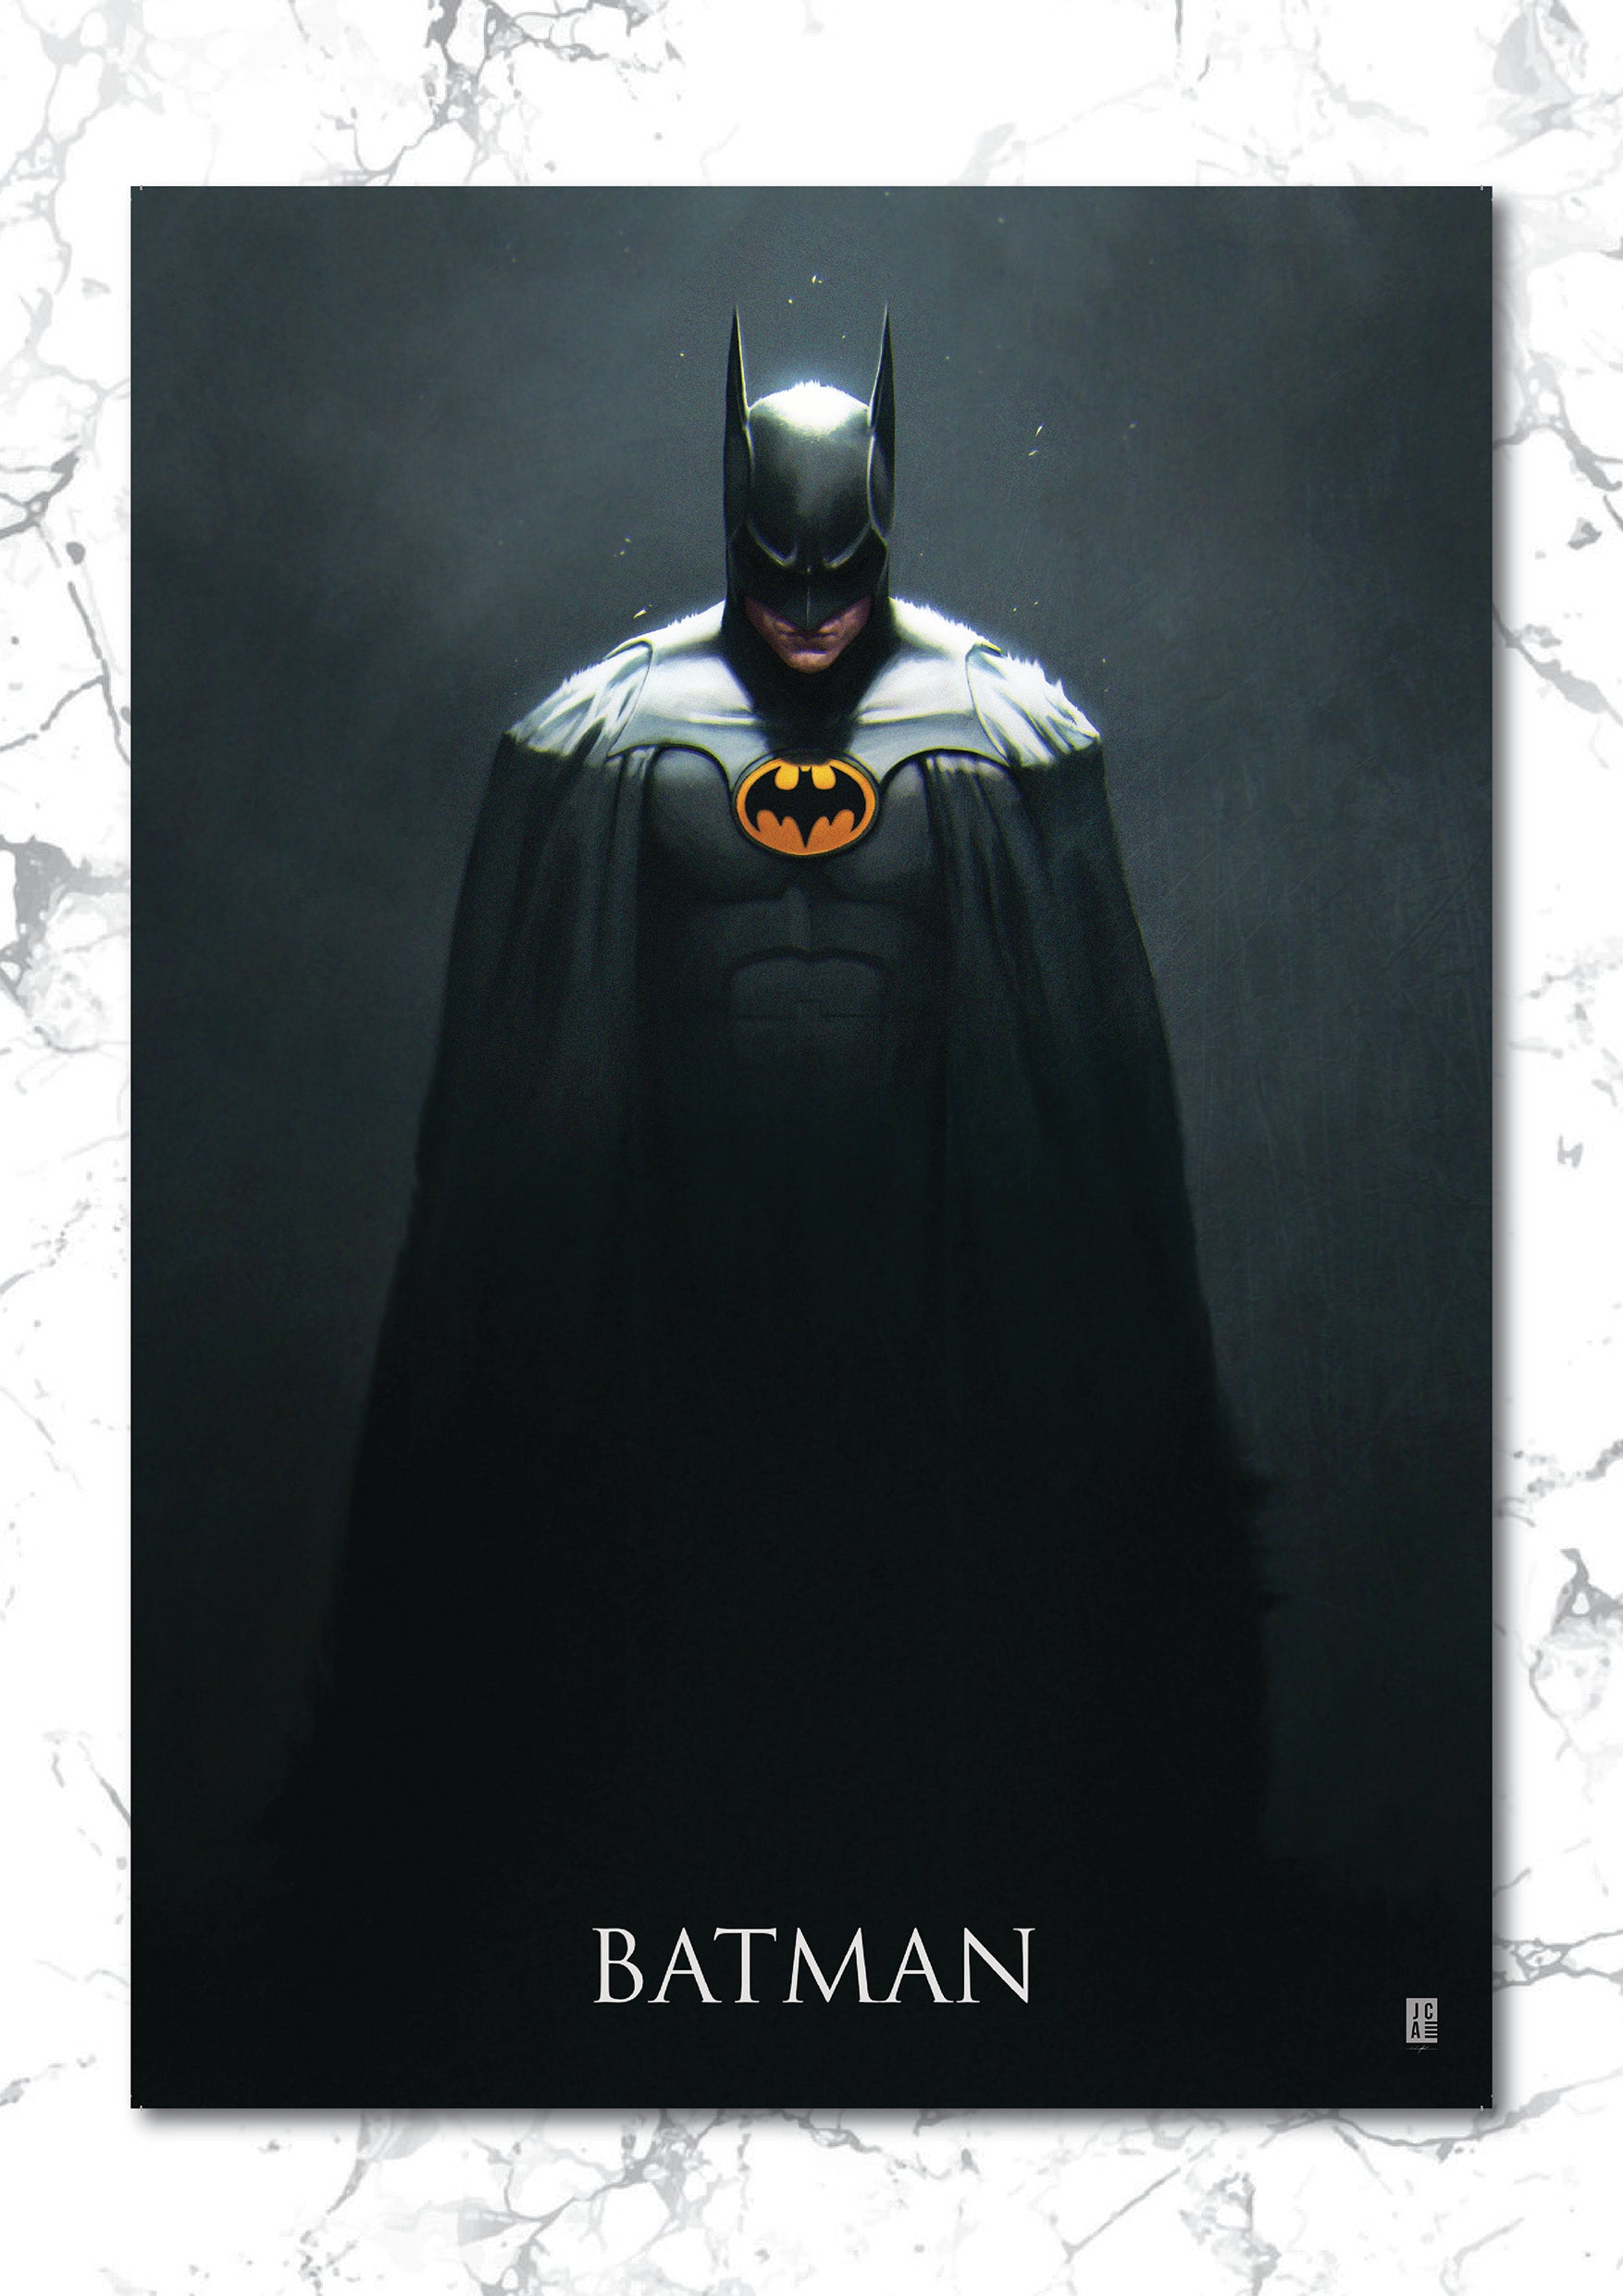 Batman - Keaton Art Print